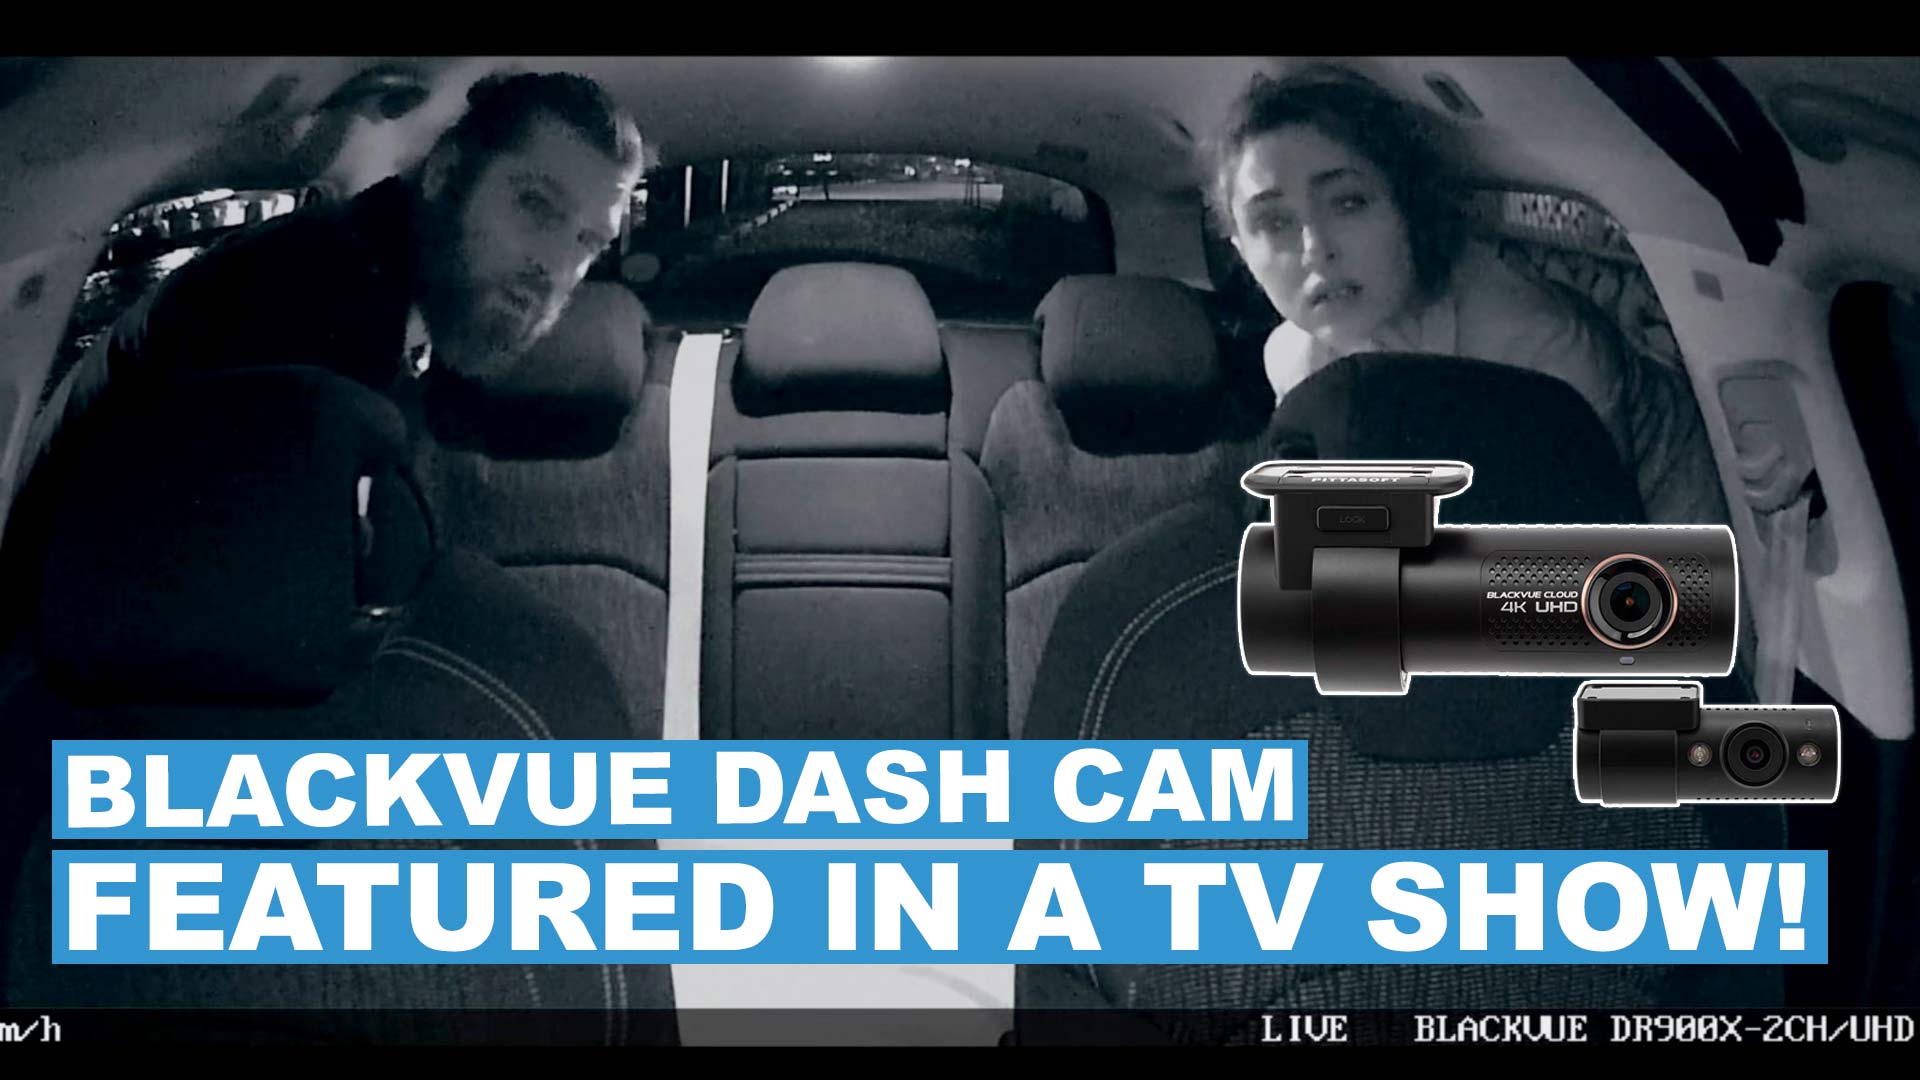 French TV Thriller Featuring BlackVue Dash Cam